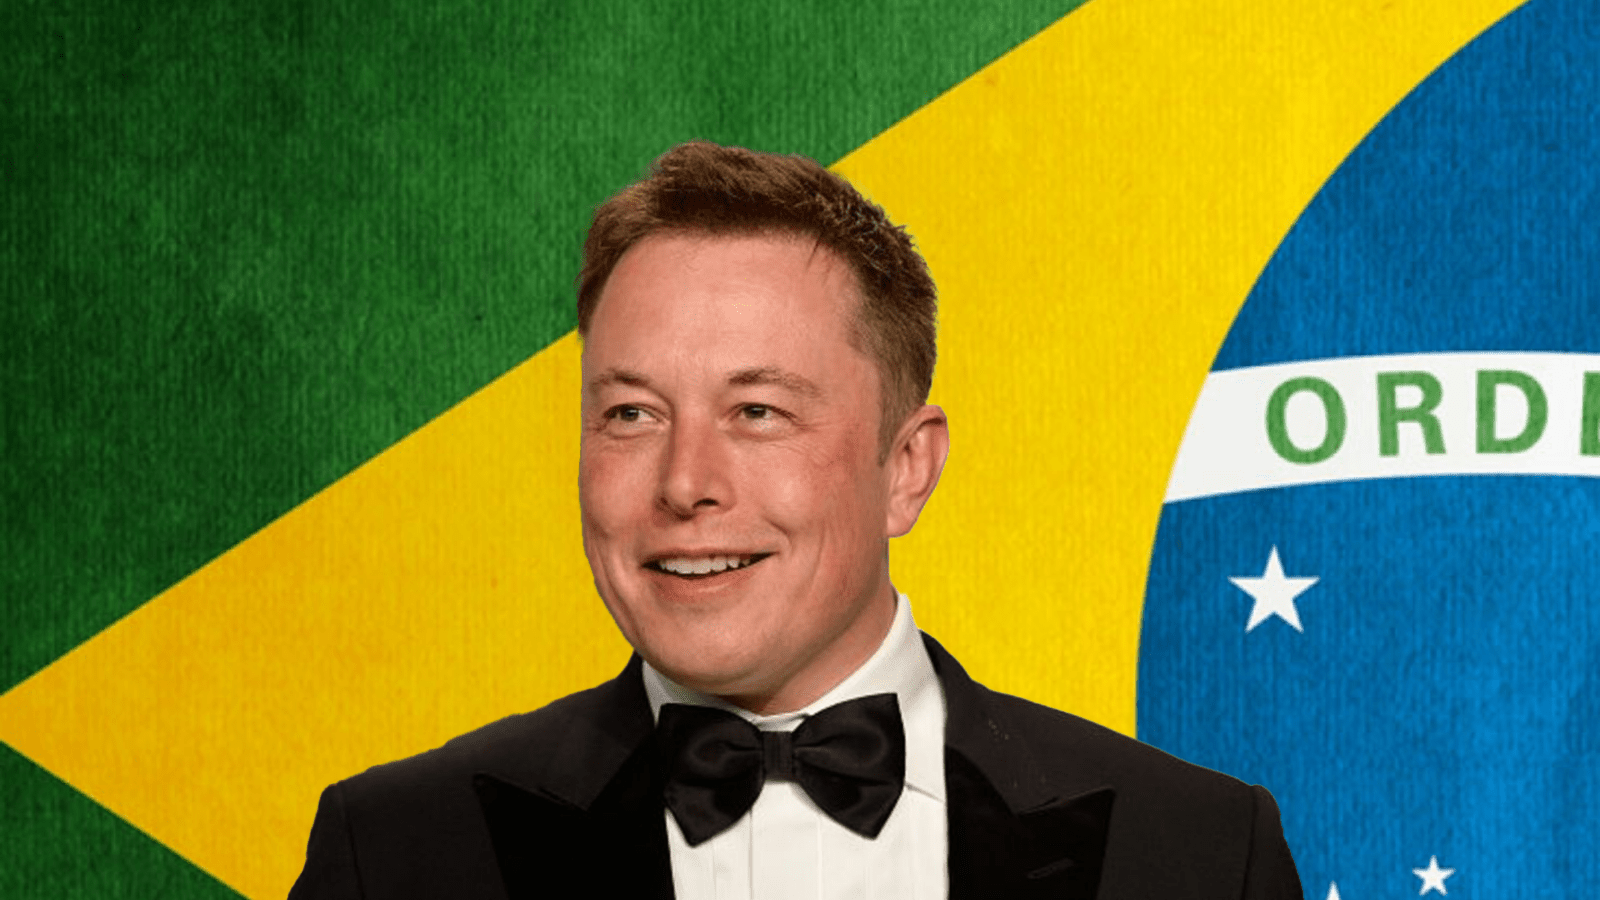 Elon musk chega ao brasil para tratar de amazônia e internet. O empresário se reunirá com o presidente jair bolsonaro, representantes do governo e empresários. Entenda